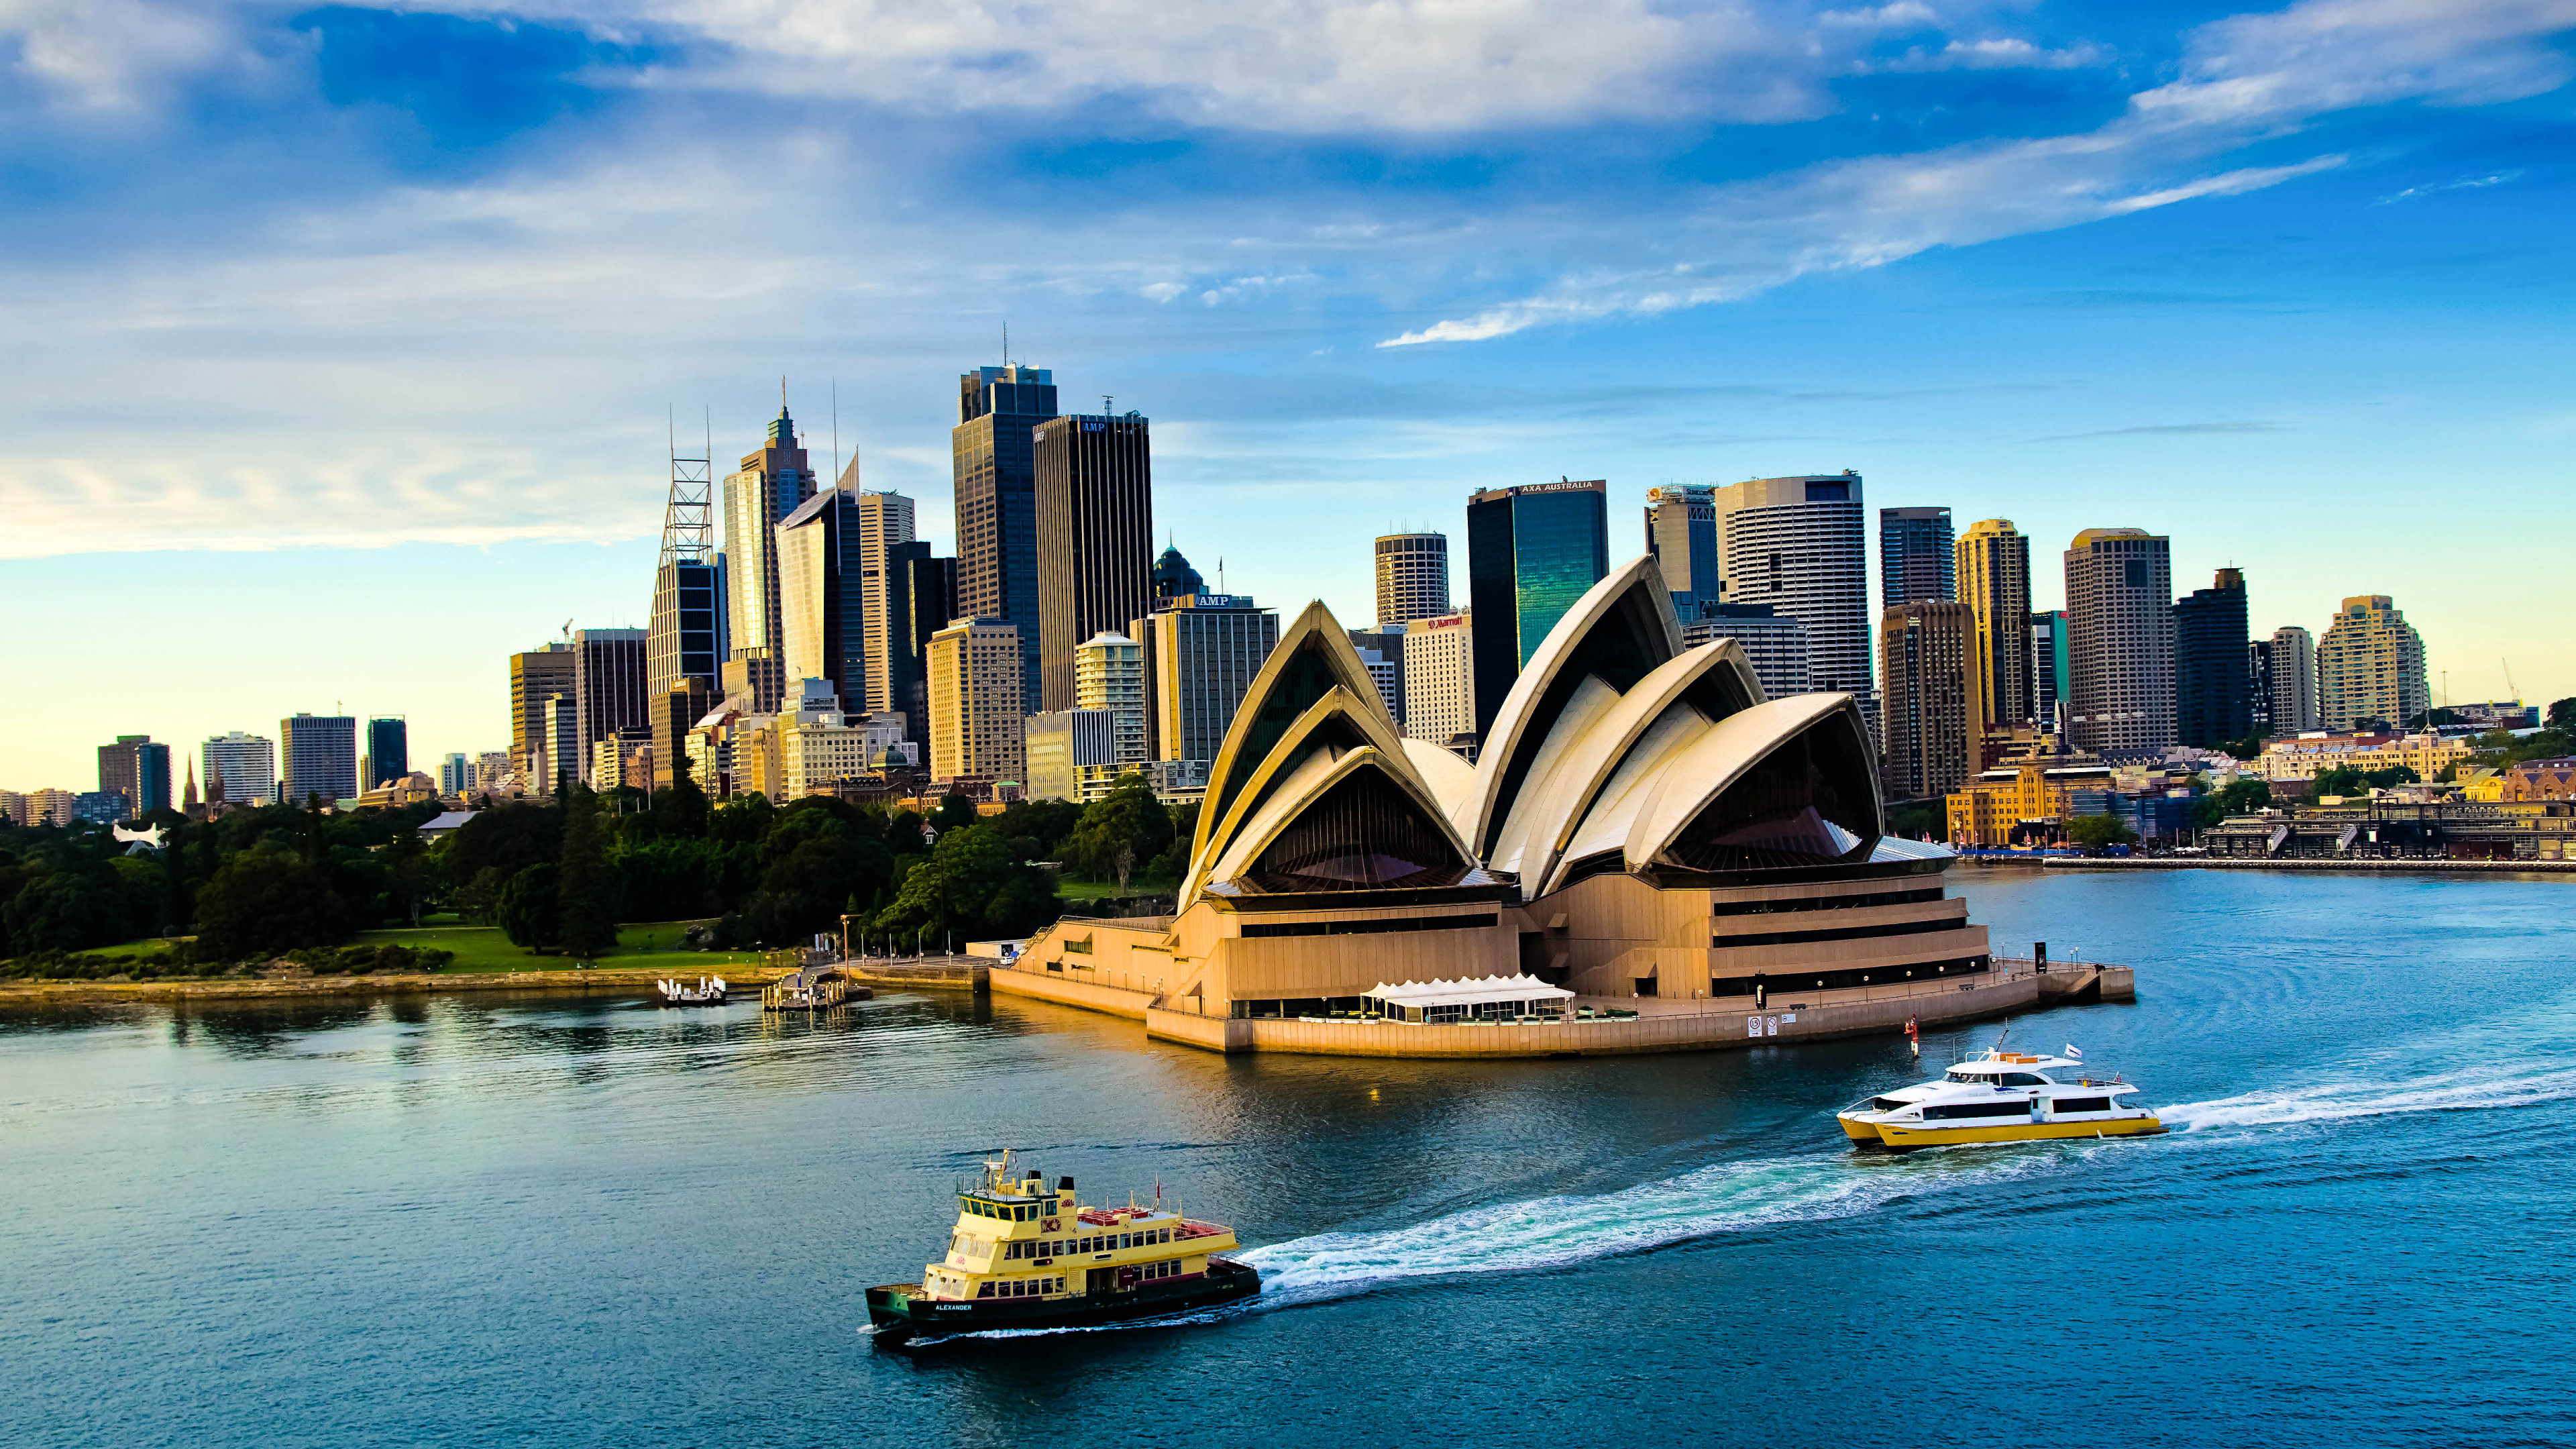 悉尼歌剧院, 歌剧院, 水运, 城市景观, 城市 壁纸 3840x2160 允许